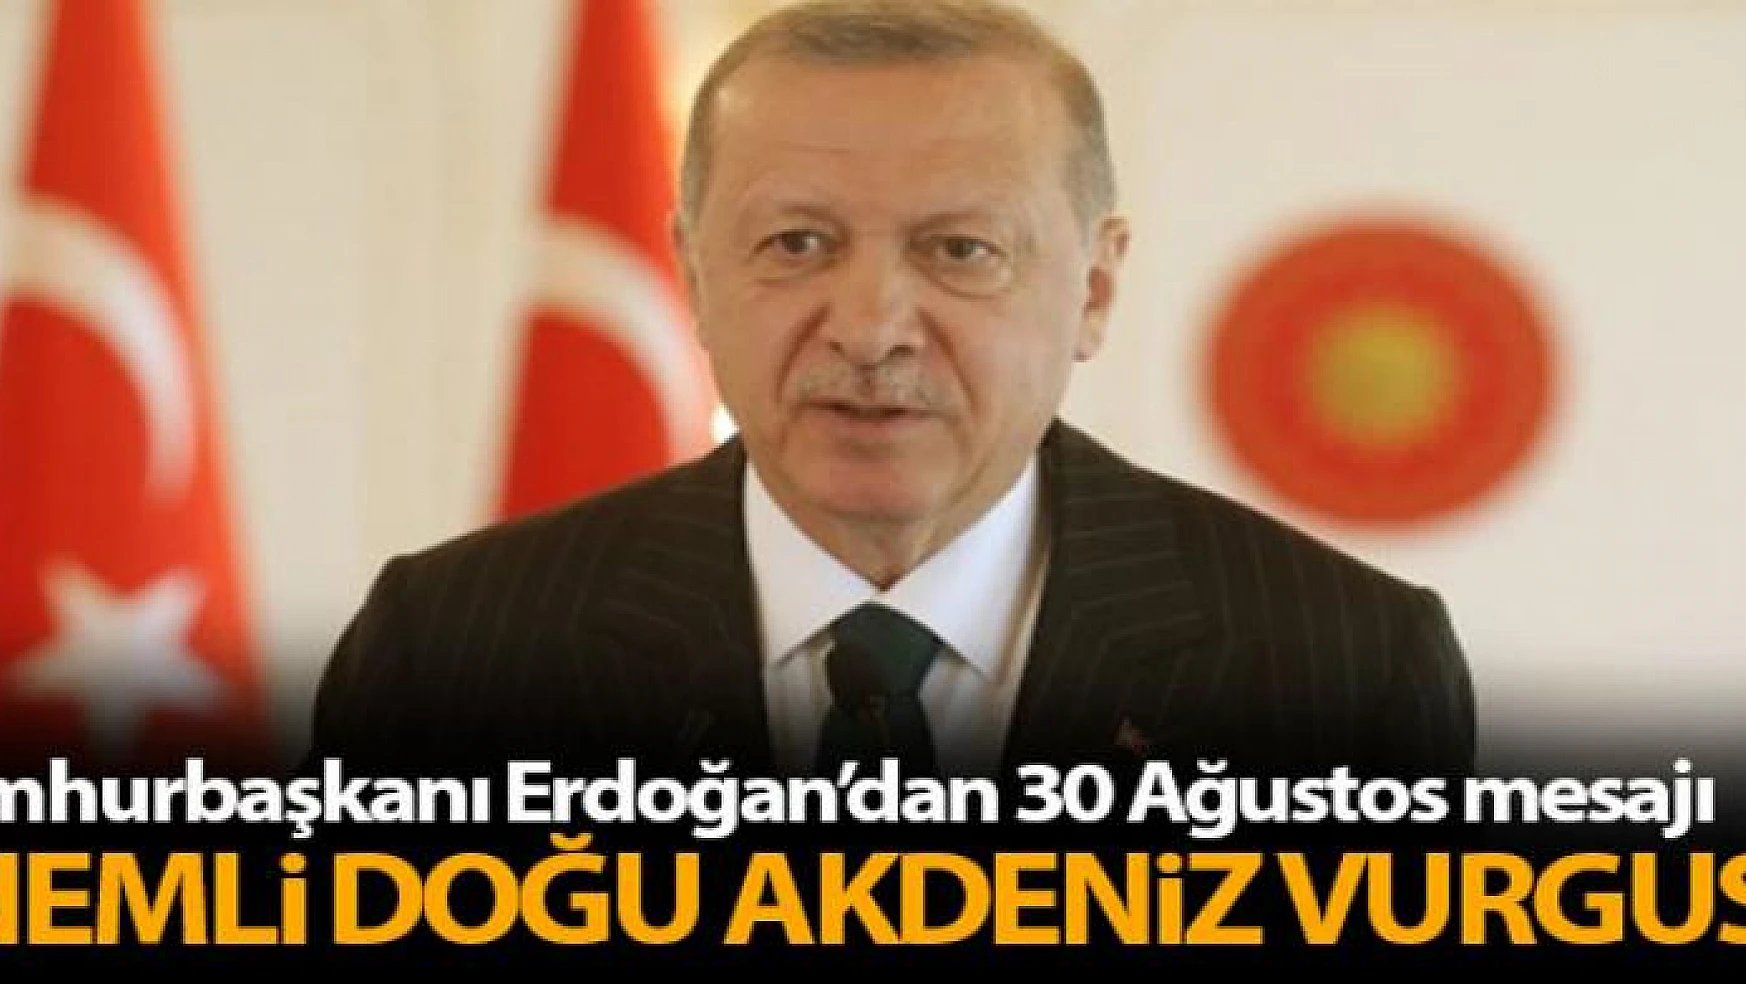 Erdoğan: '30 Ağustos zaferiyle bu toprakların ebedi vatanımız olduğu bir kez daha ilan edilmiştir'